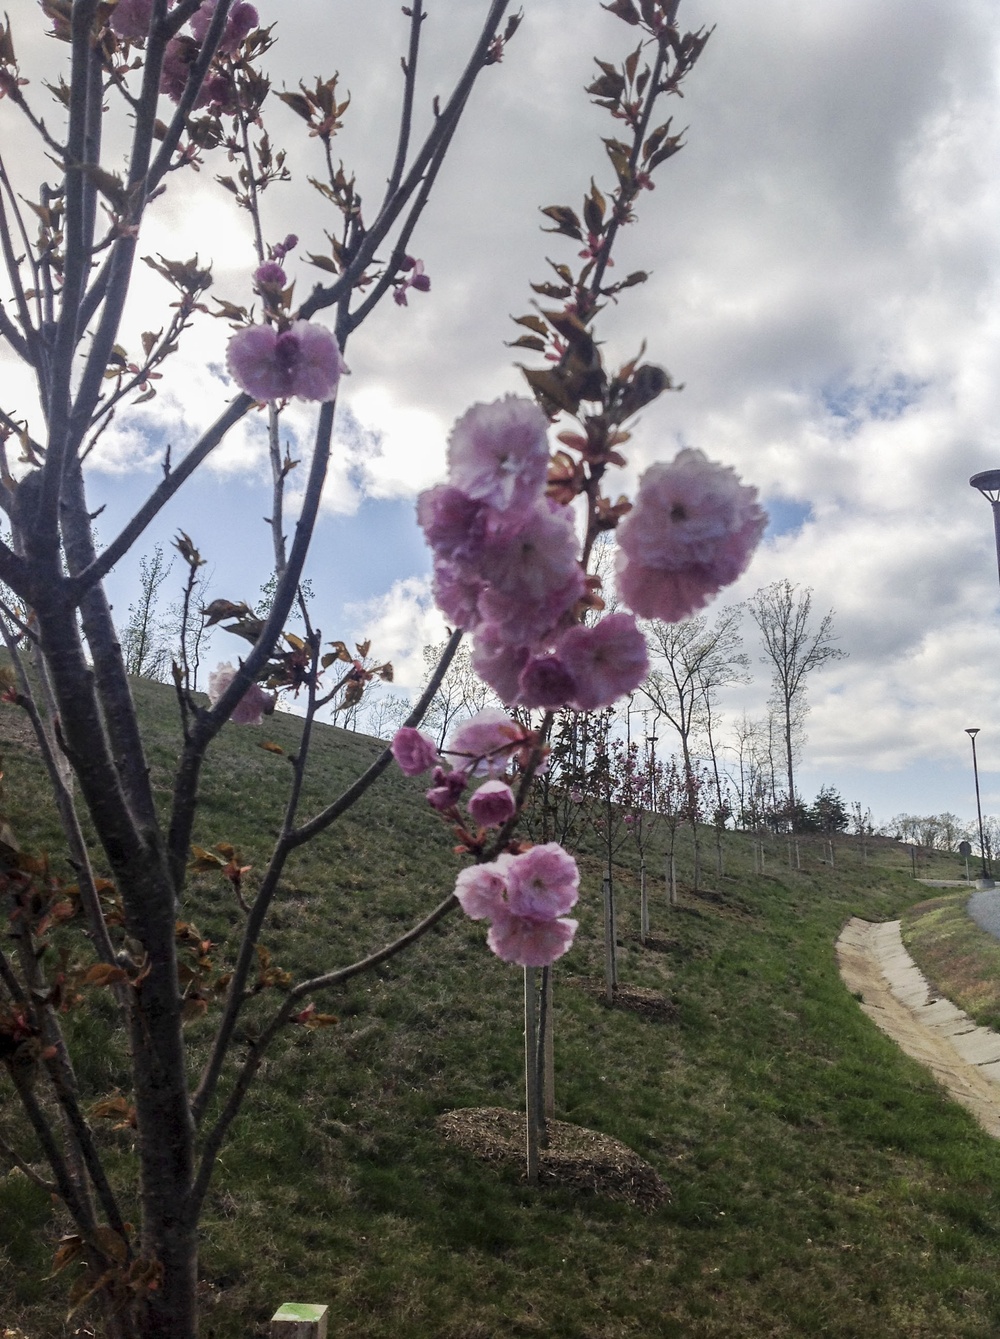 Reserve Marine donates cherry blossom trees to Quantico museum